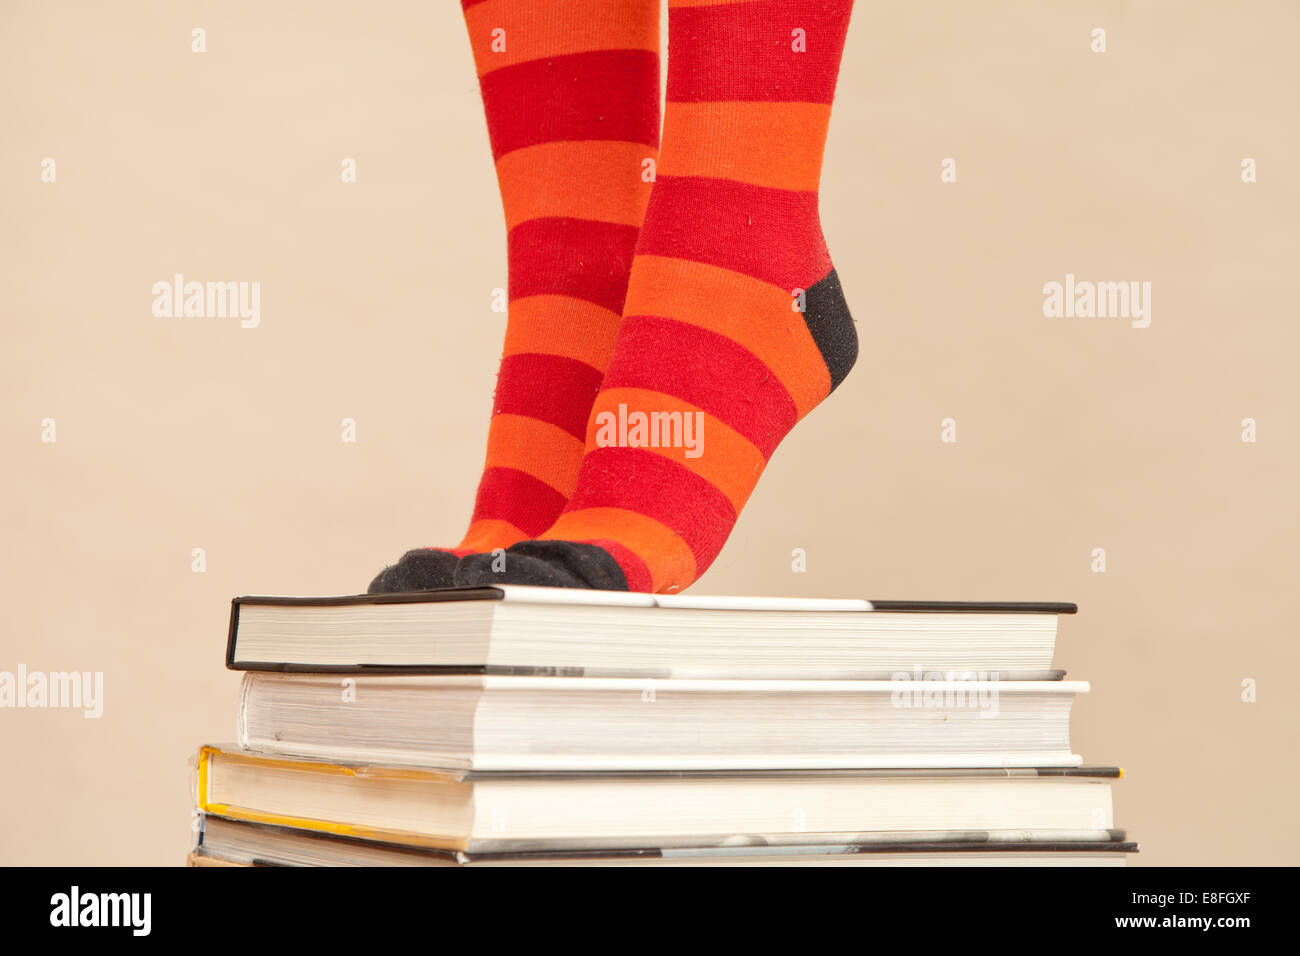 Primer plano de una mujer con calcetines a rayas sobre los dedos de los pies en una pila de libros de tapa dura Foto de stock